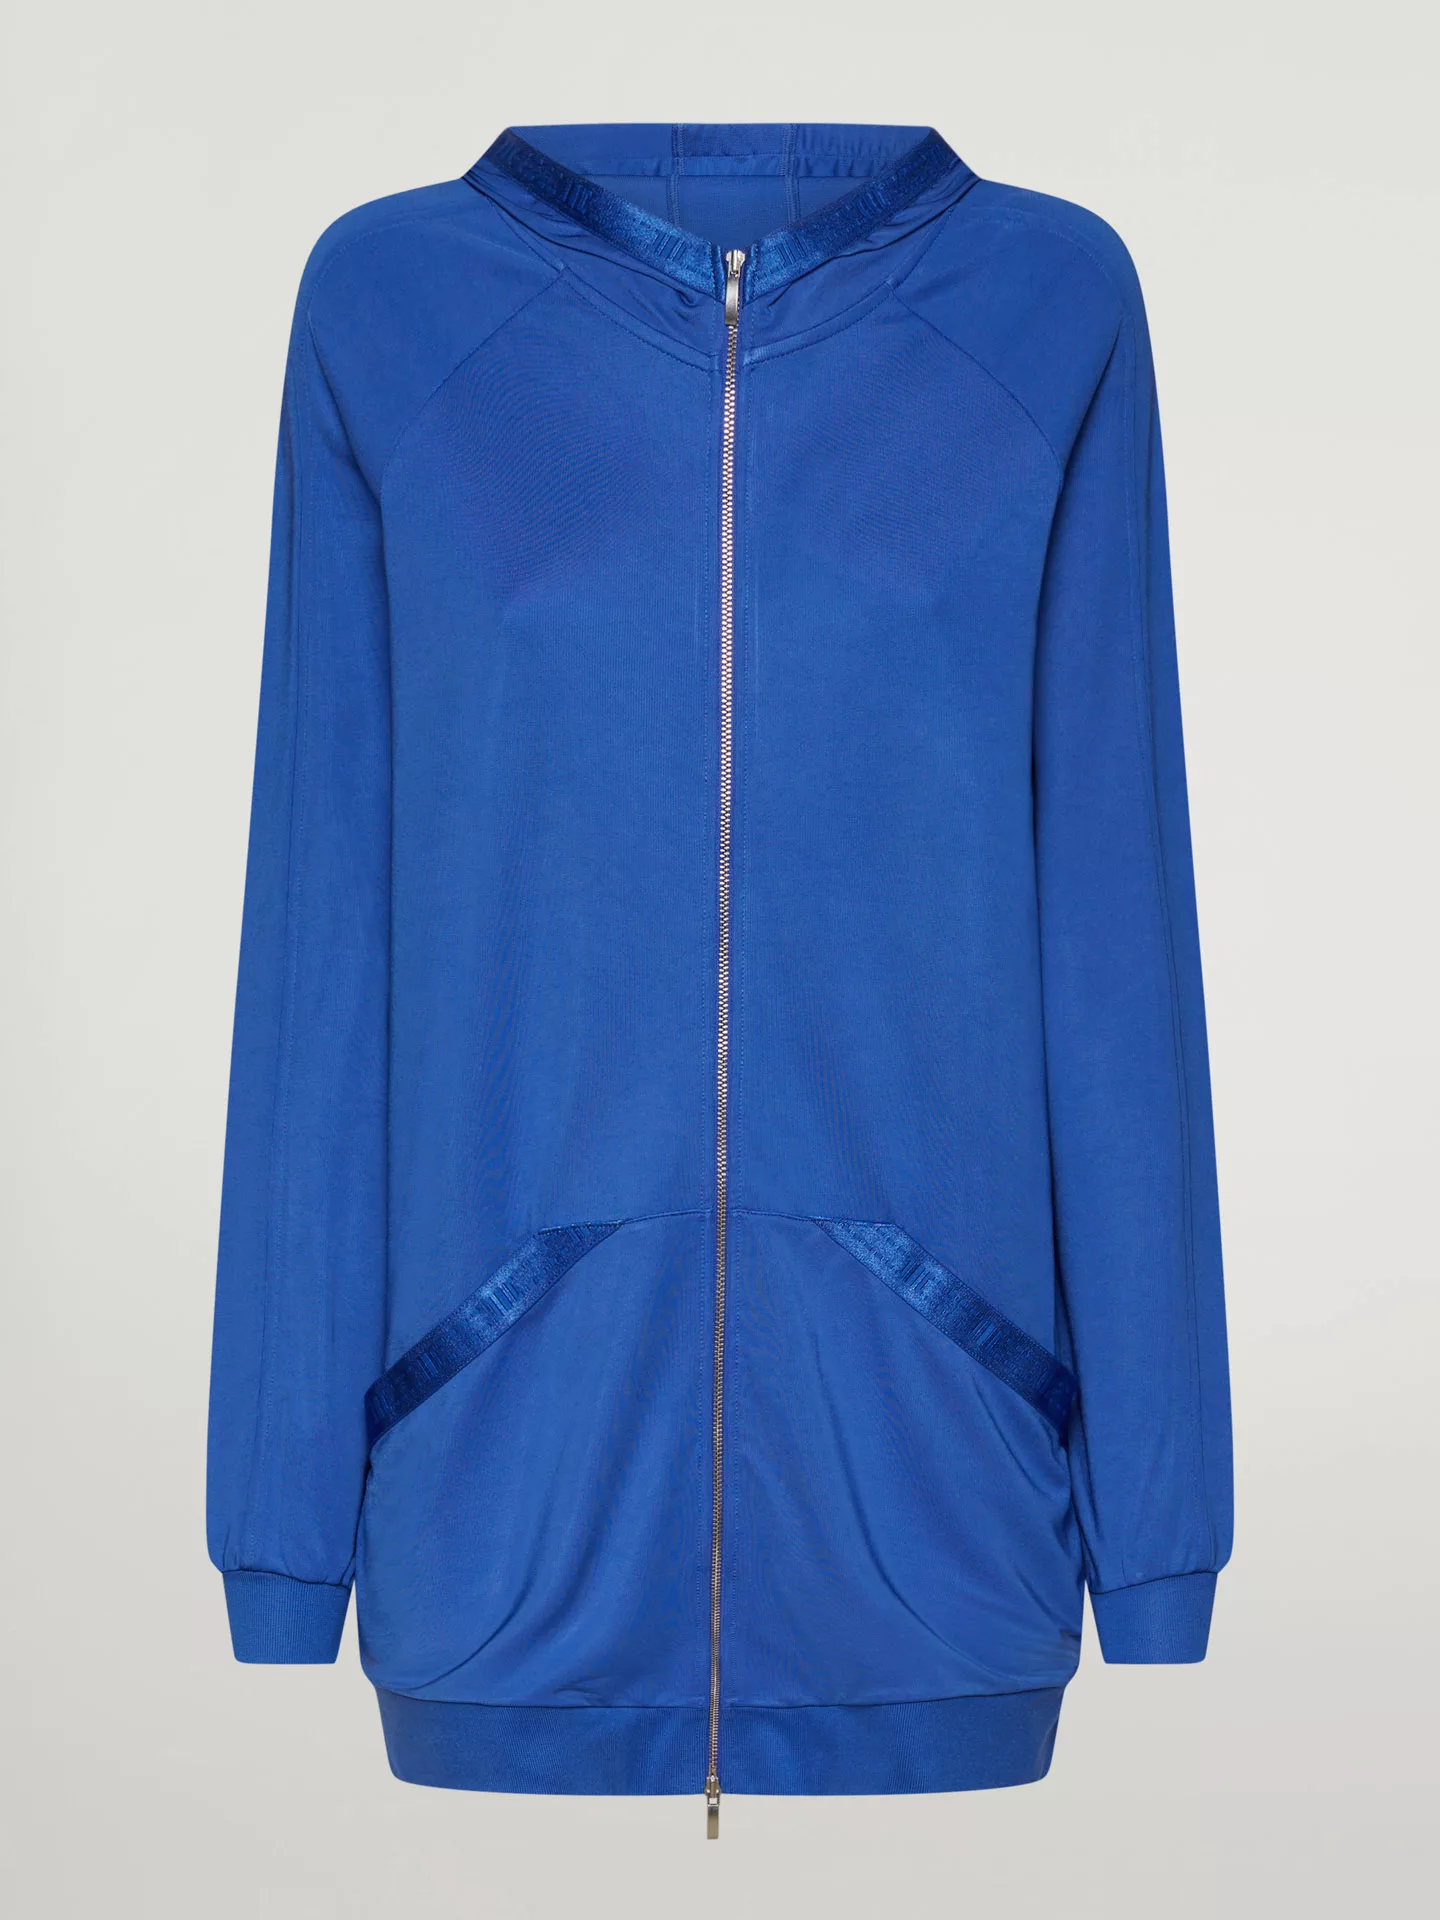 Wolford - Full zip Sweater Jacket, Frau, dazzling blue, Größe: XS günstig online kaufen